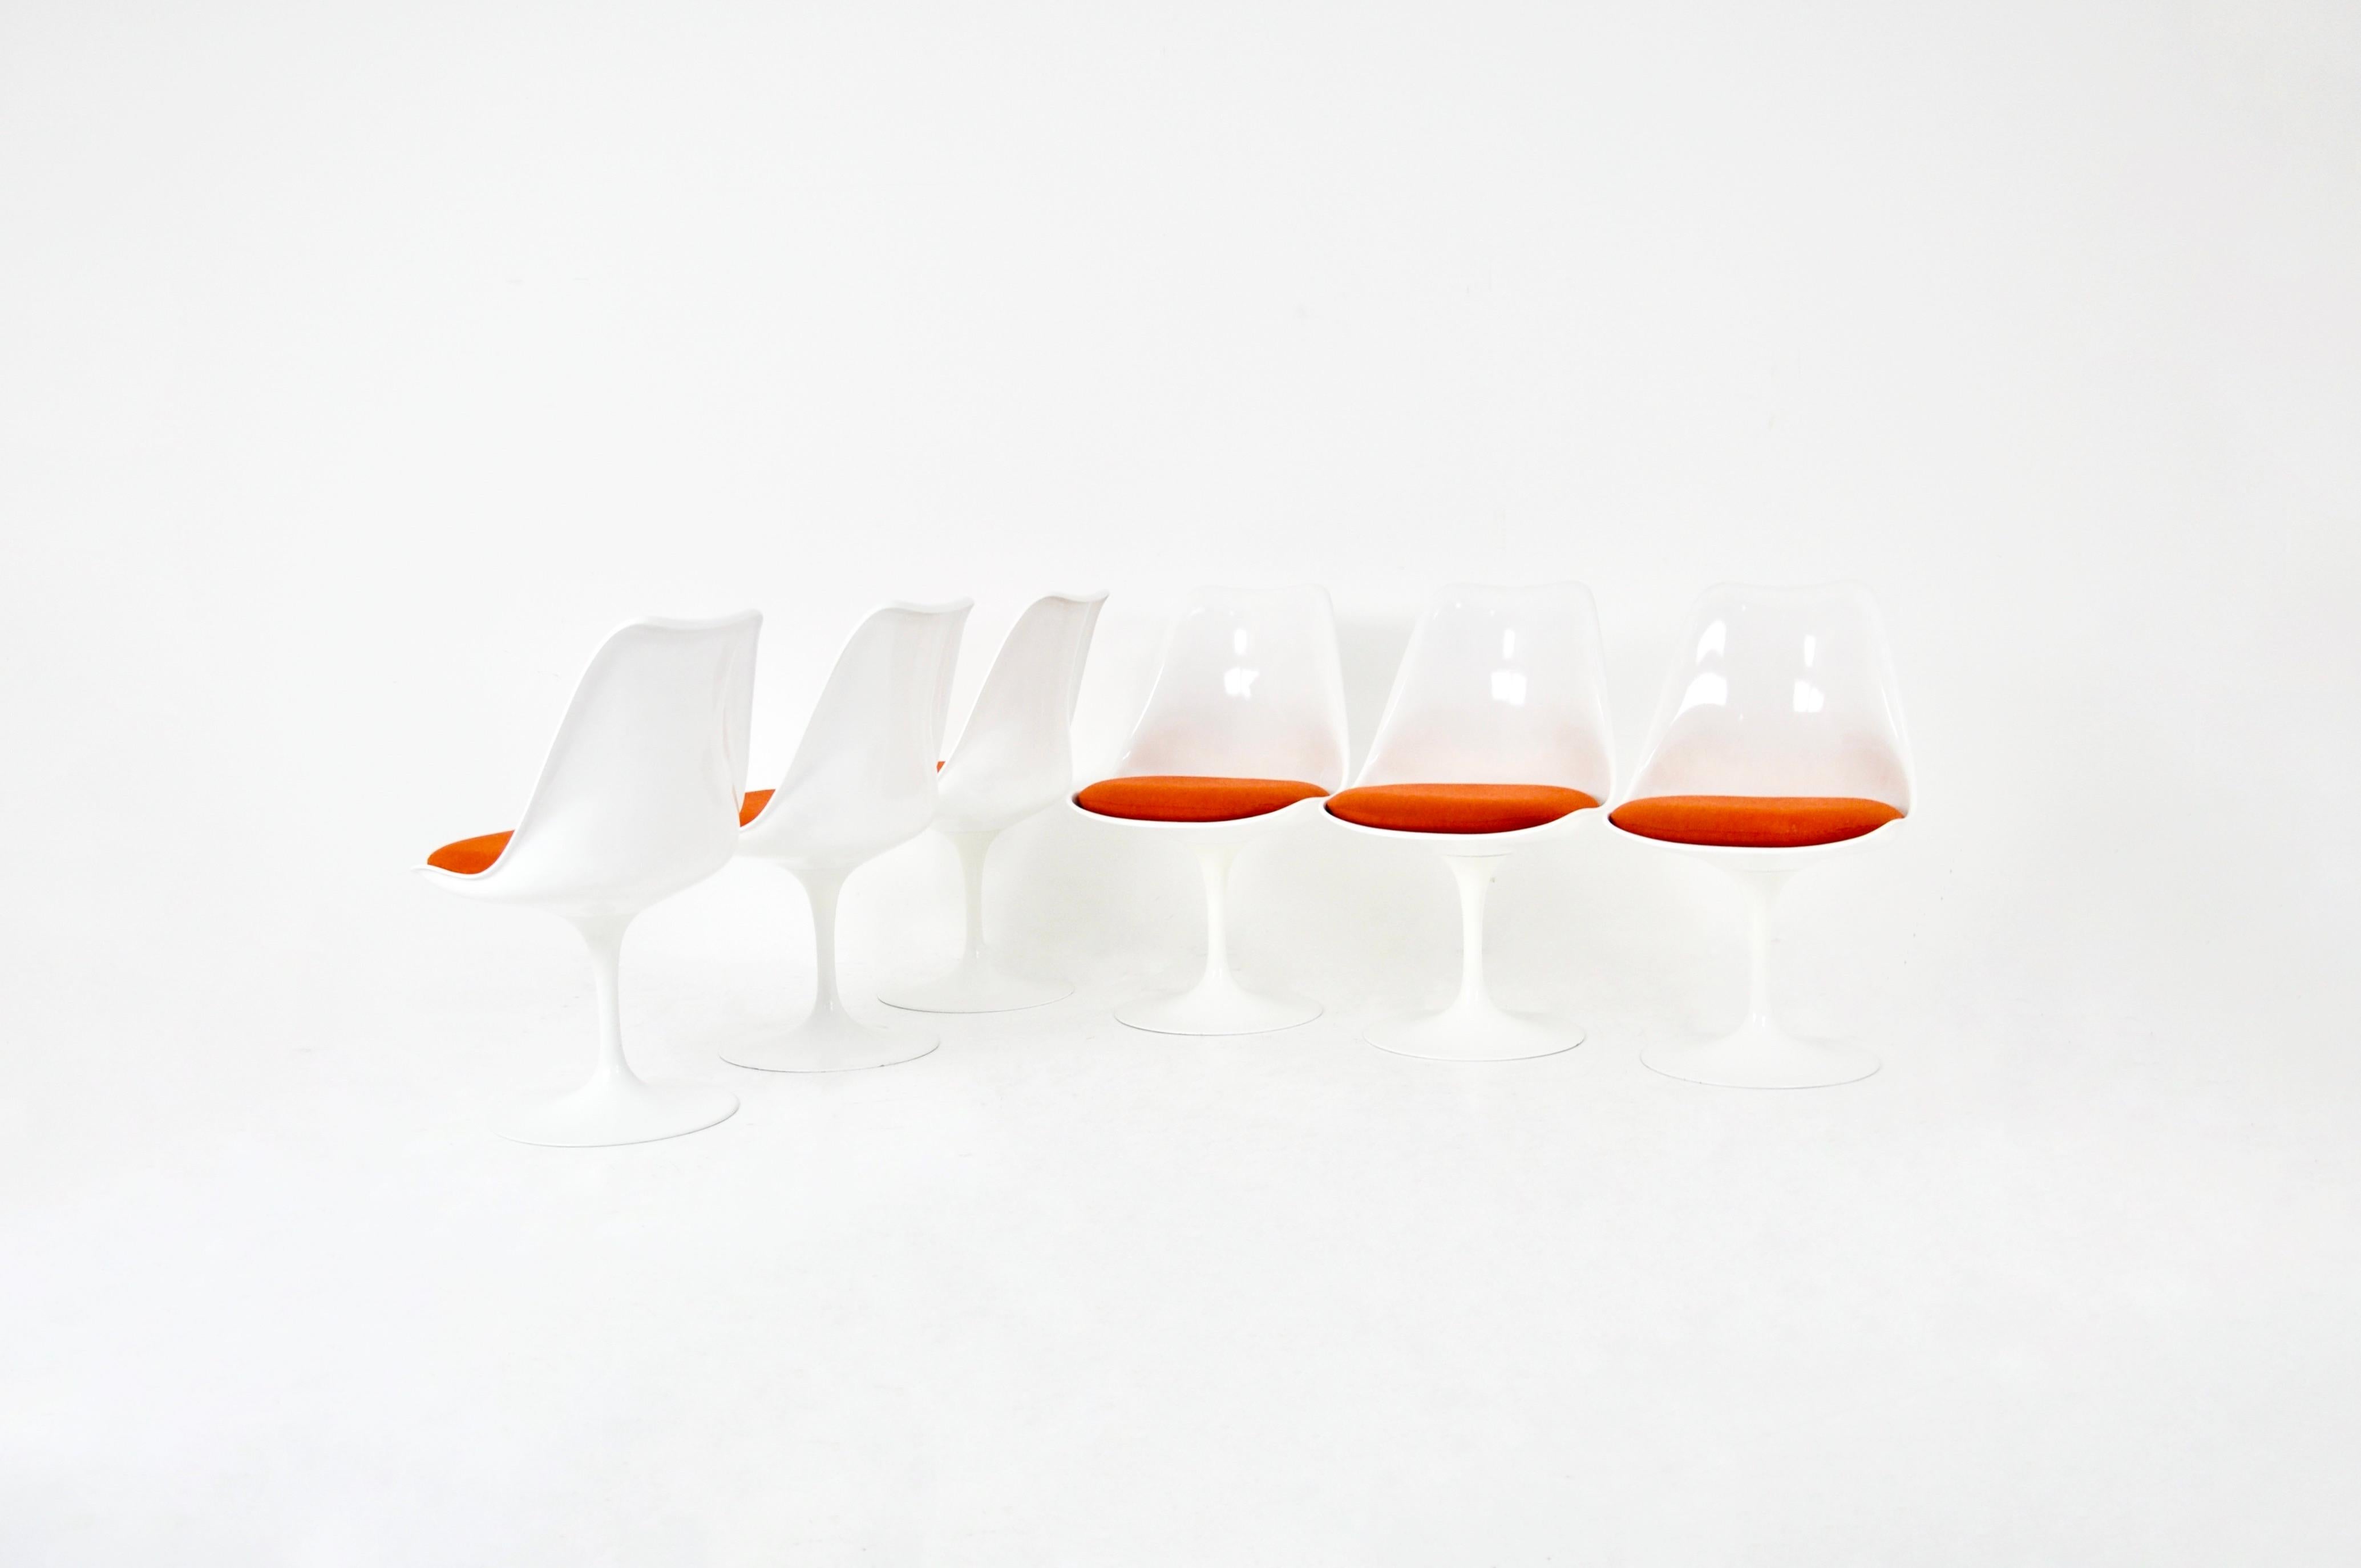 Set aus 6 Stühlen aus Fiberglas, Aluminium und orangefarbenem Stoff. Knoll international unter den Beinen gestempelt. Sitzhöhe 45 cm. Abnutzung durch die Zeit und das Alter der Stühle.